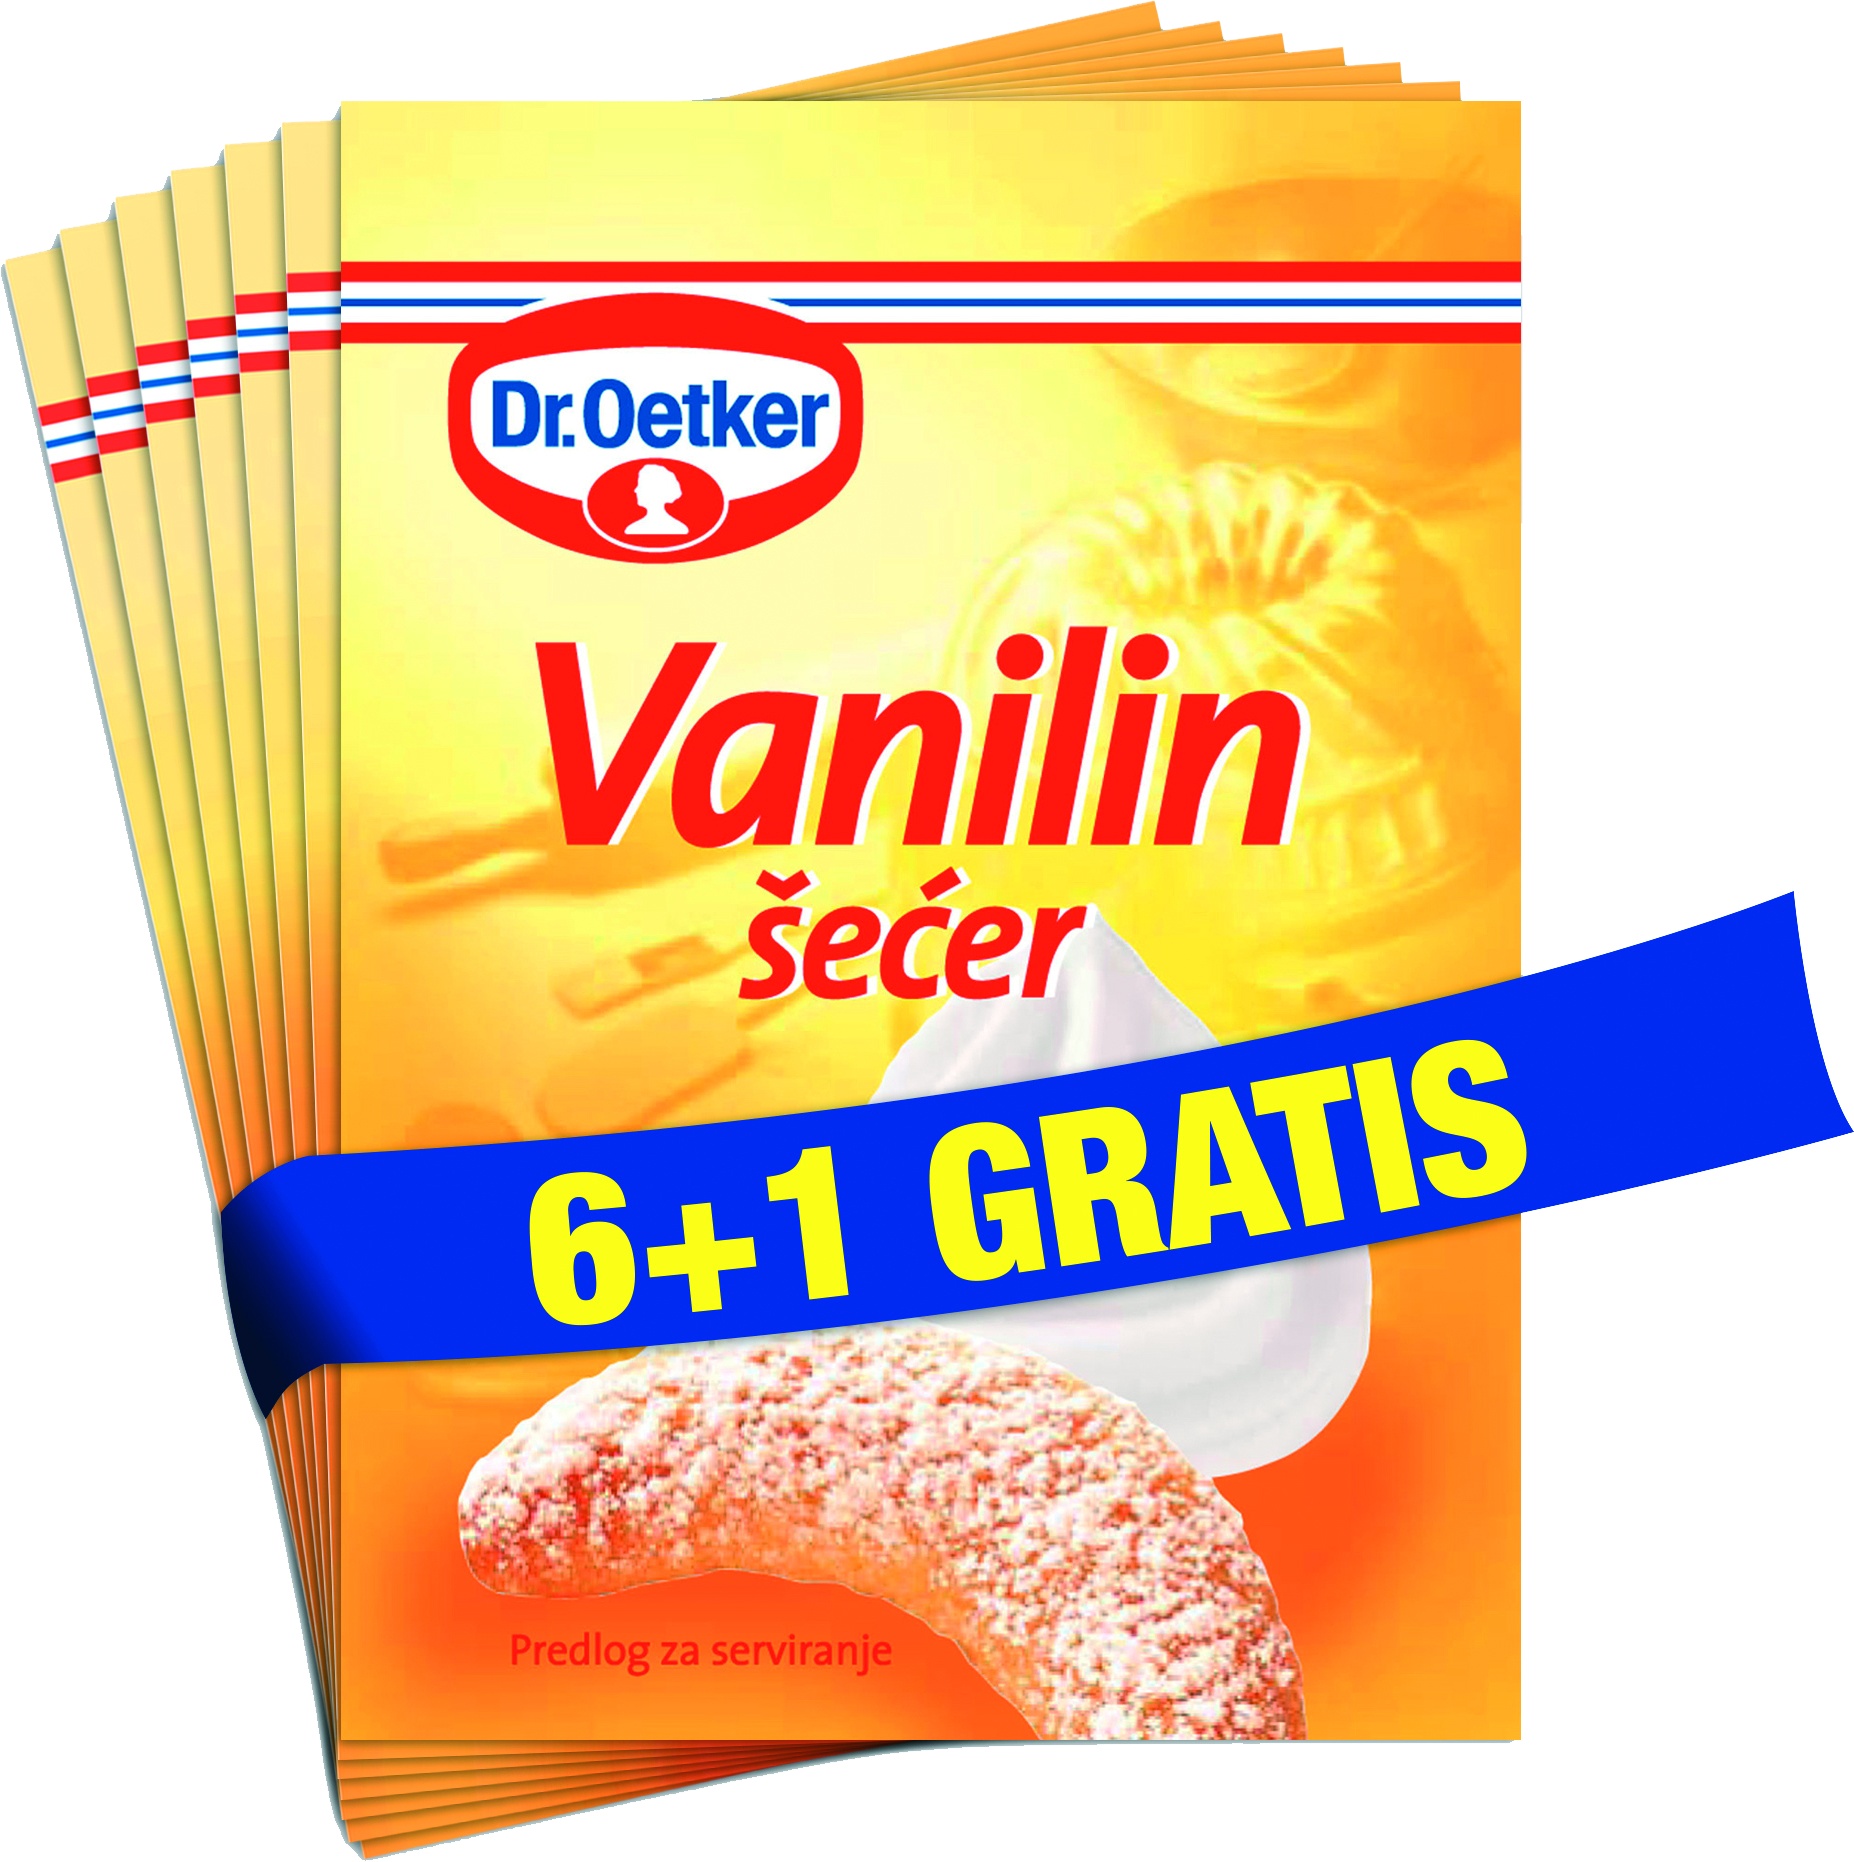 Slika za Vanilin šećer Dr.Oetker 6 +1 gratis 70g